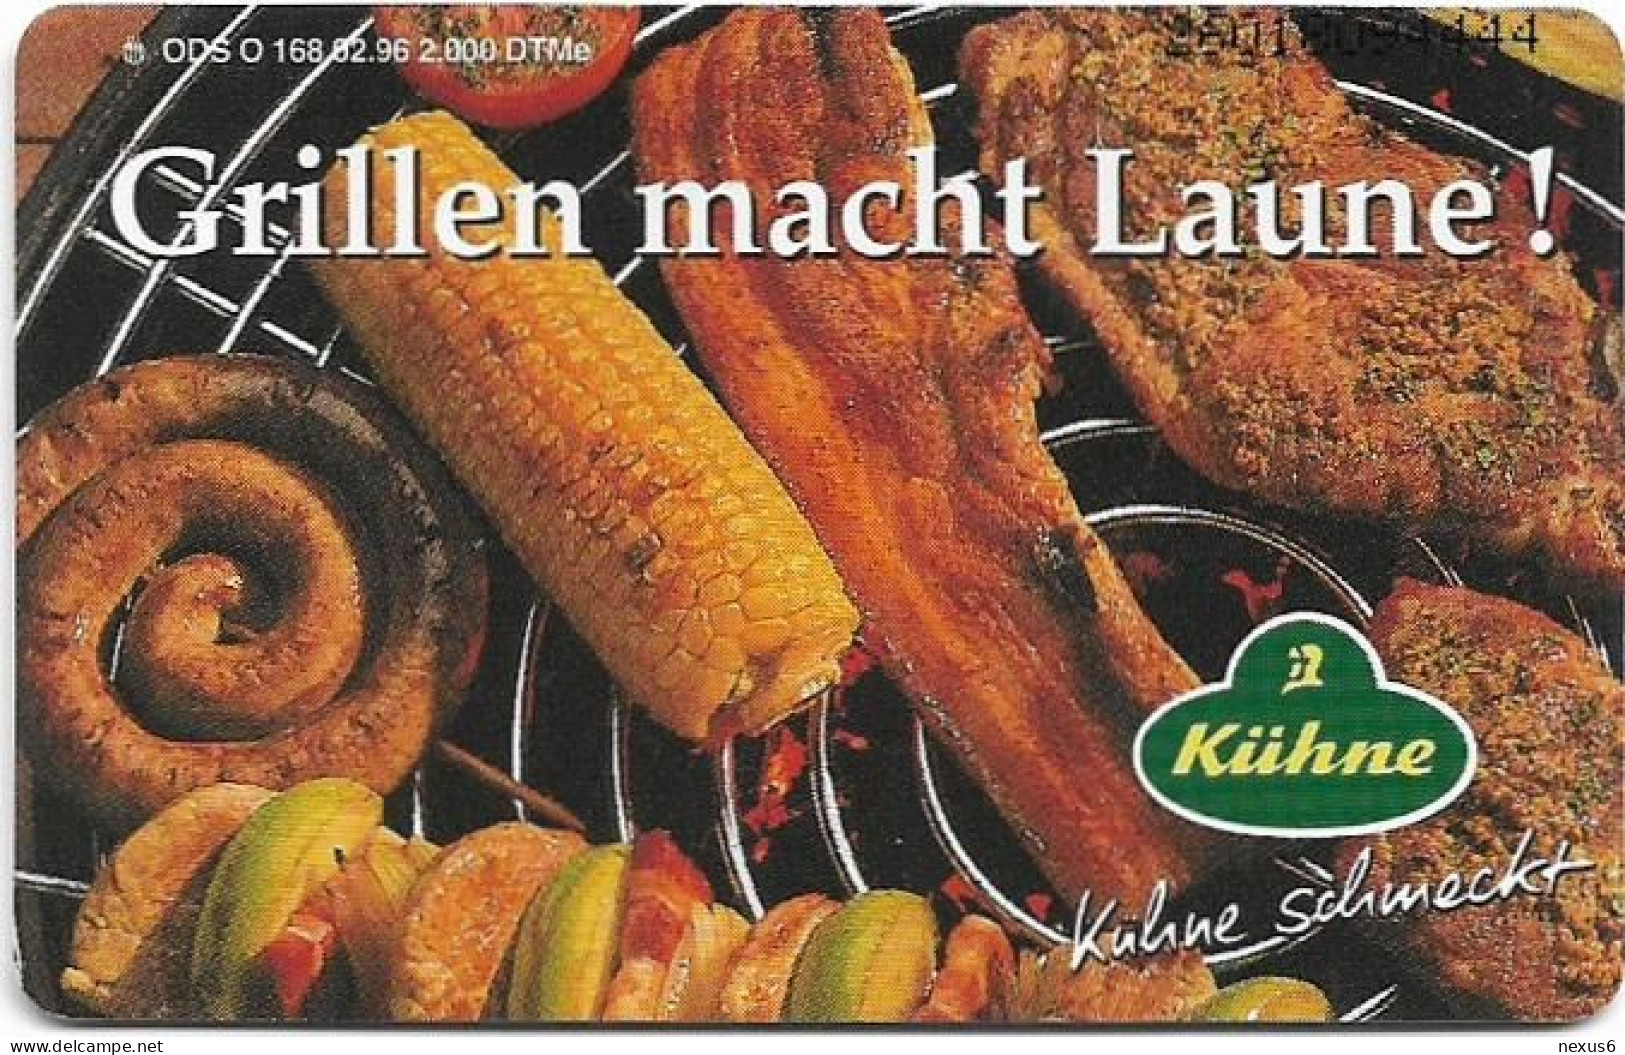 Germany - Kühne 18 - Grillen Macht Laune - O 0168 - 02.1996, 6DM, 2.000ex, Used - O-Series: Kundenserie Vom Sammlerservice Ausgeschlossen